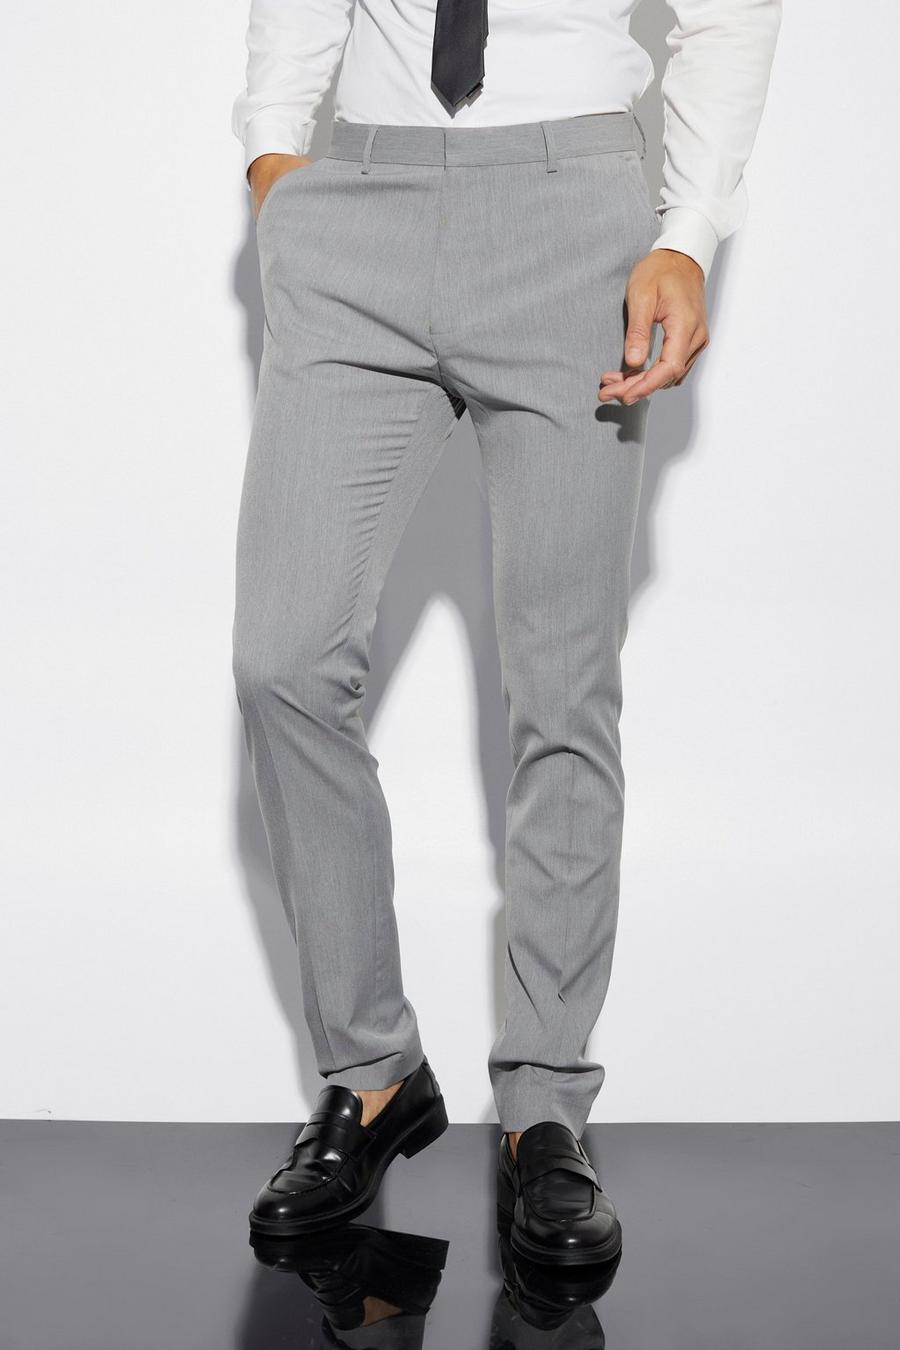 אפור gris מכנסי חליפה סקיני לגברים גבוהים